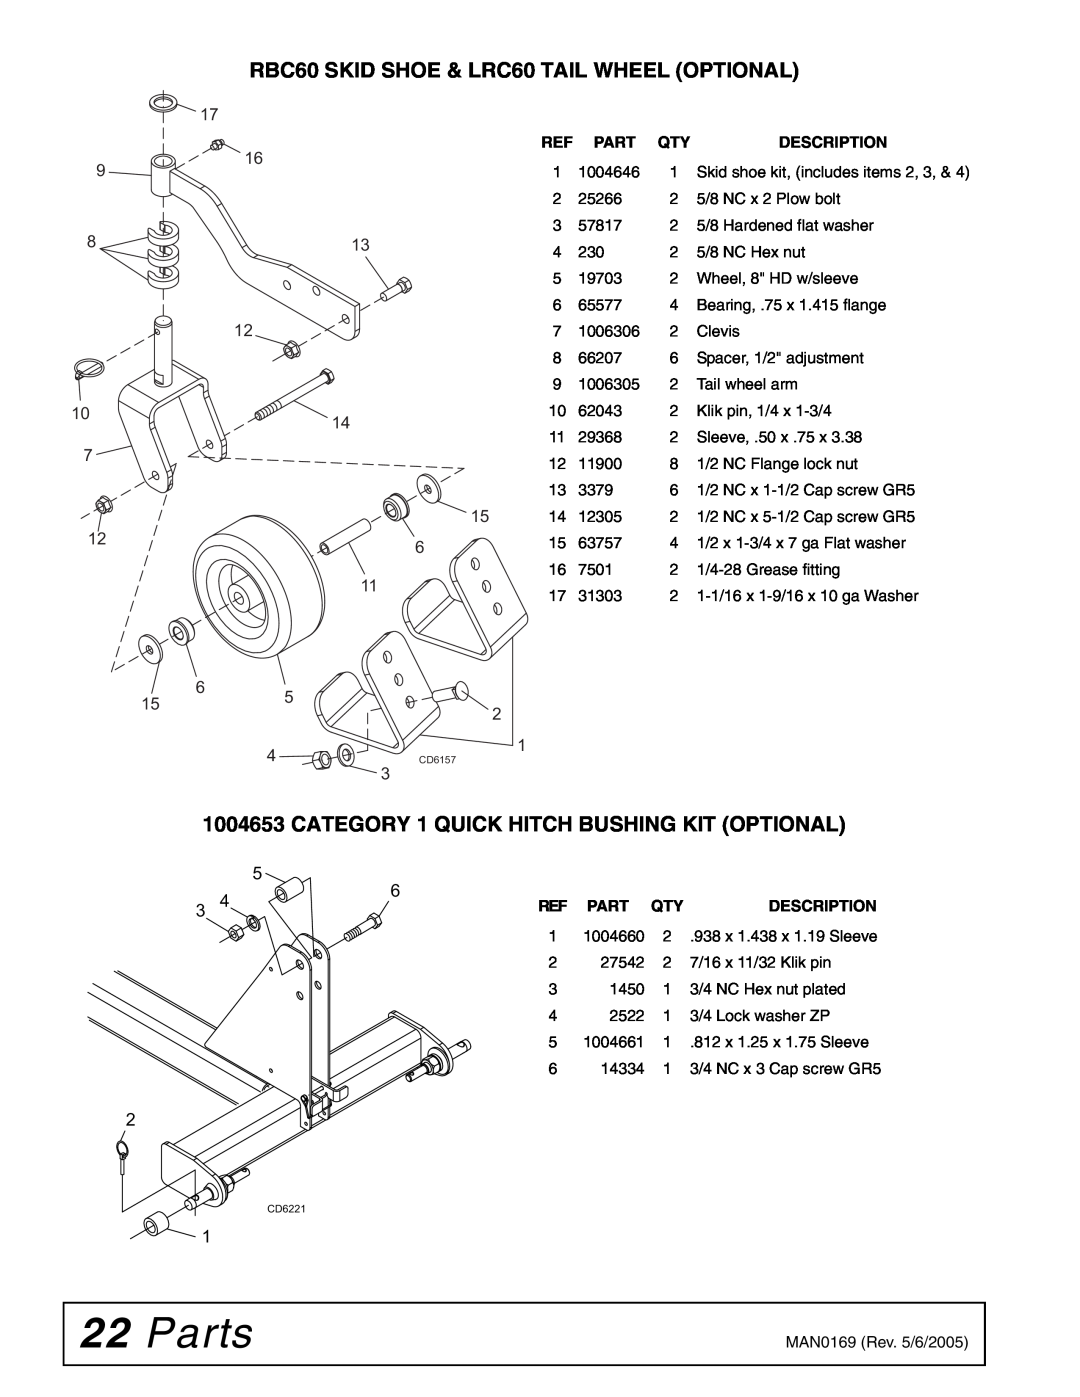 Woods Equipment RBC60 LRC60 manual Parts, RBC60 SKID SHOE & LRC60 TAIL WHEEL OPTIONAL, Description 